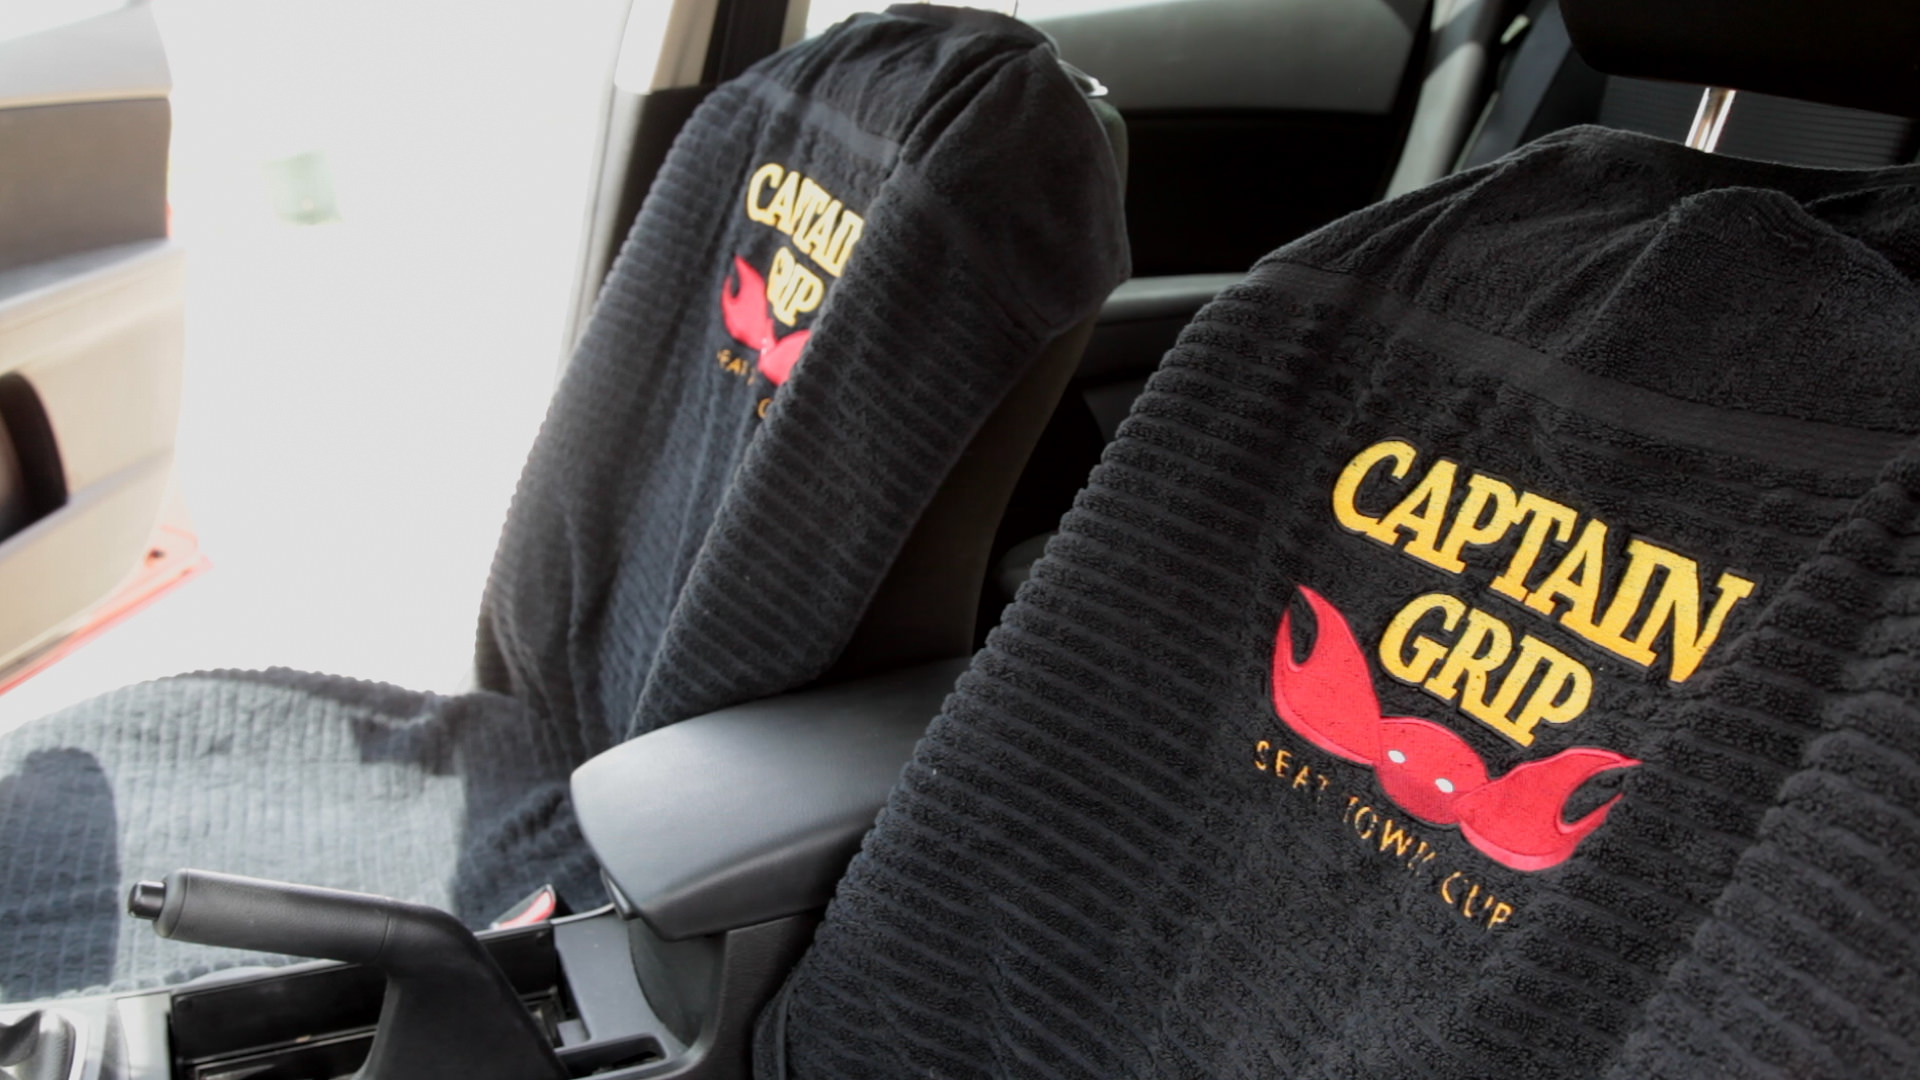 Captain Grip - Seat Towel Clip